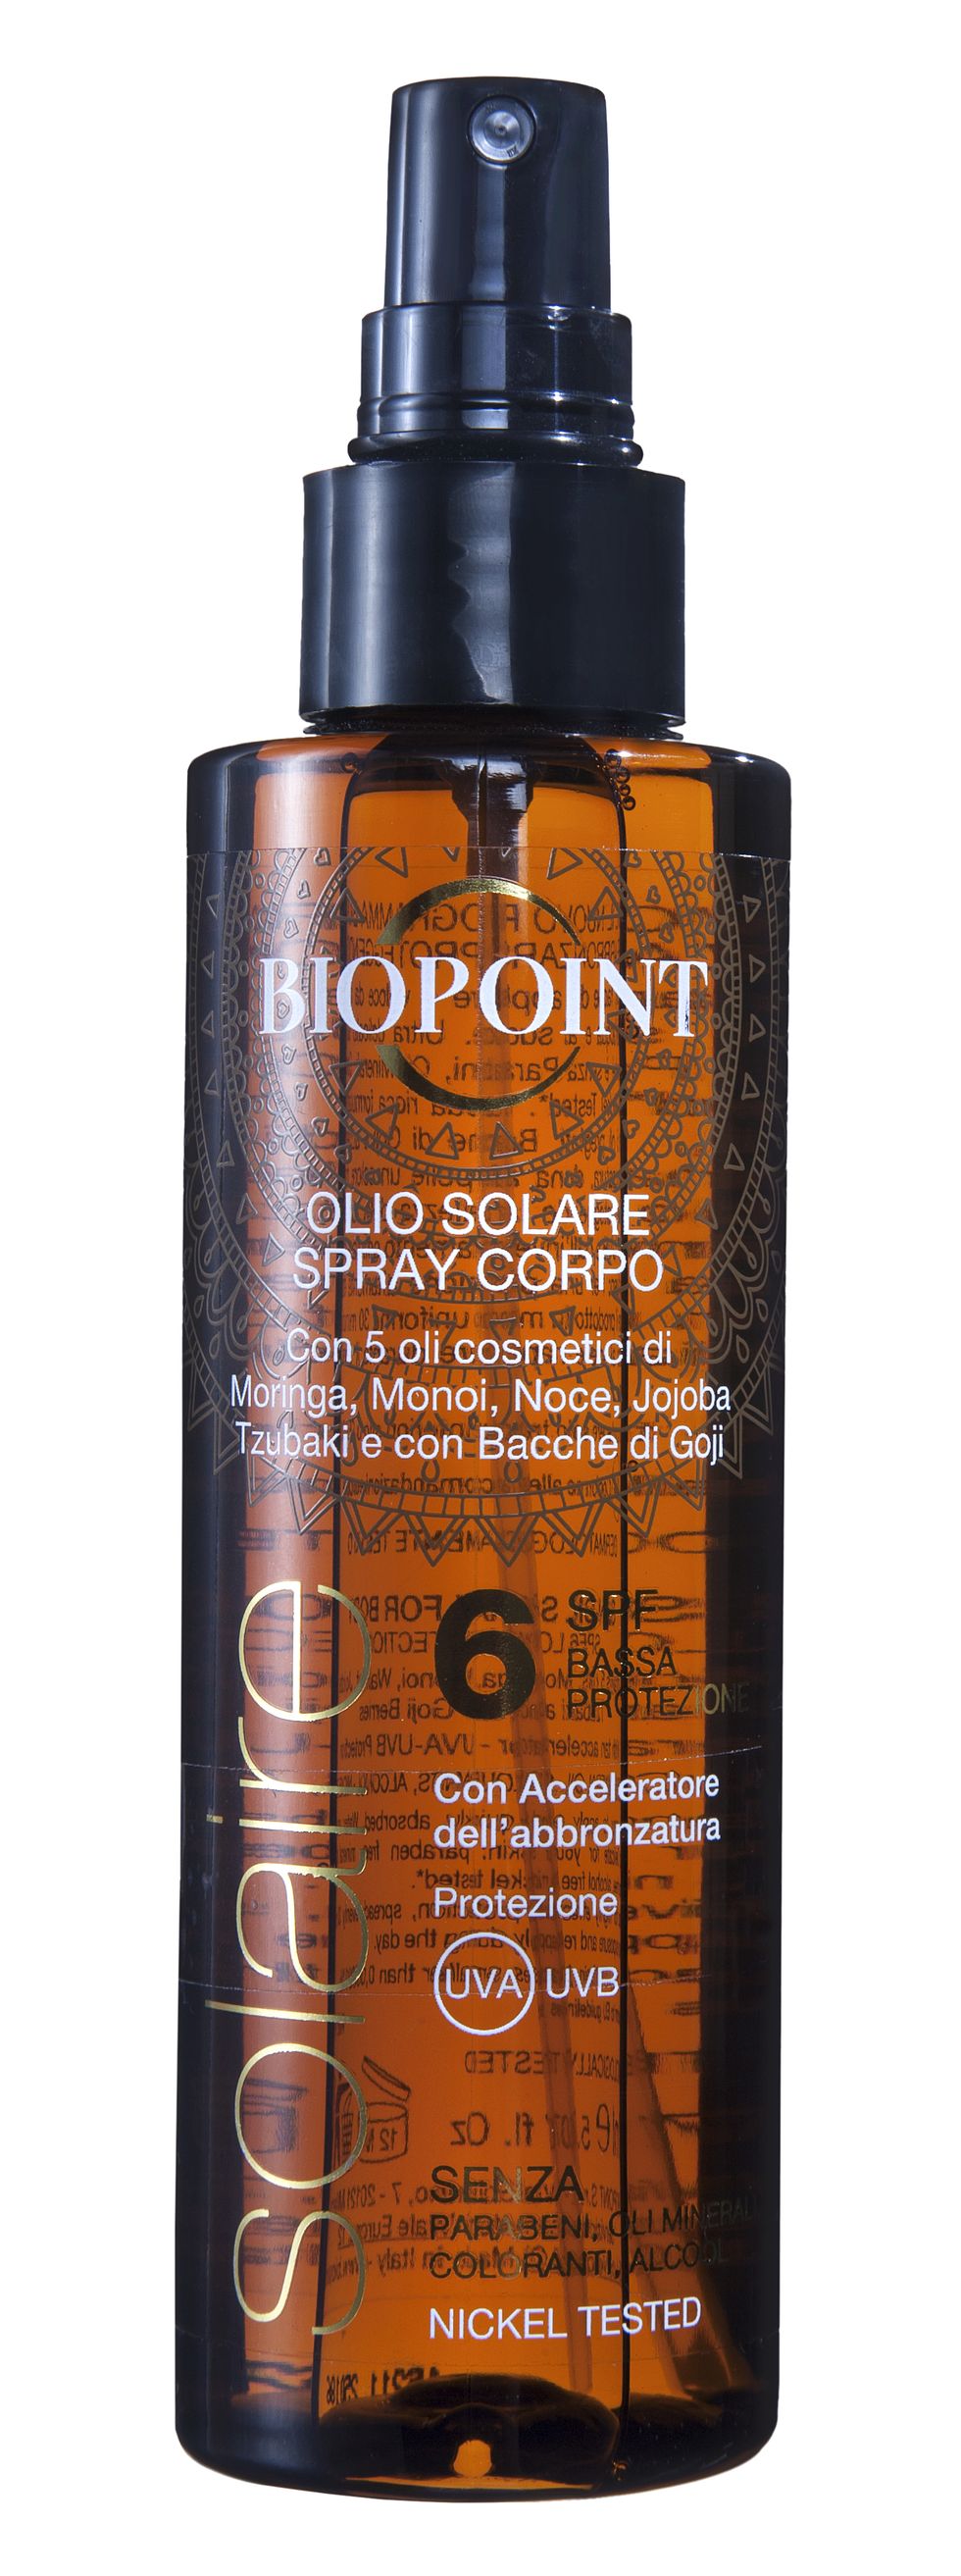 Nutre ed esalta ilcolorito: Olio SolareSpray Corpo Spf 6di Biopoint Solaire (16,80euro).